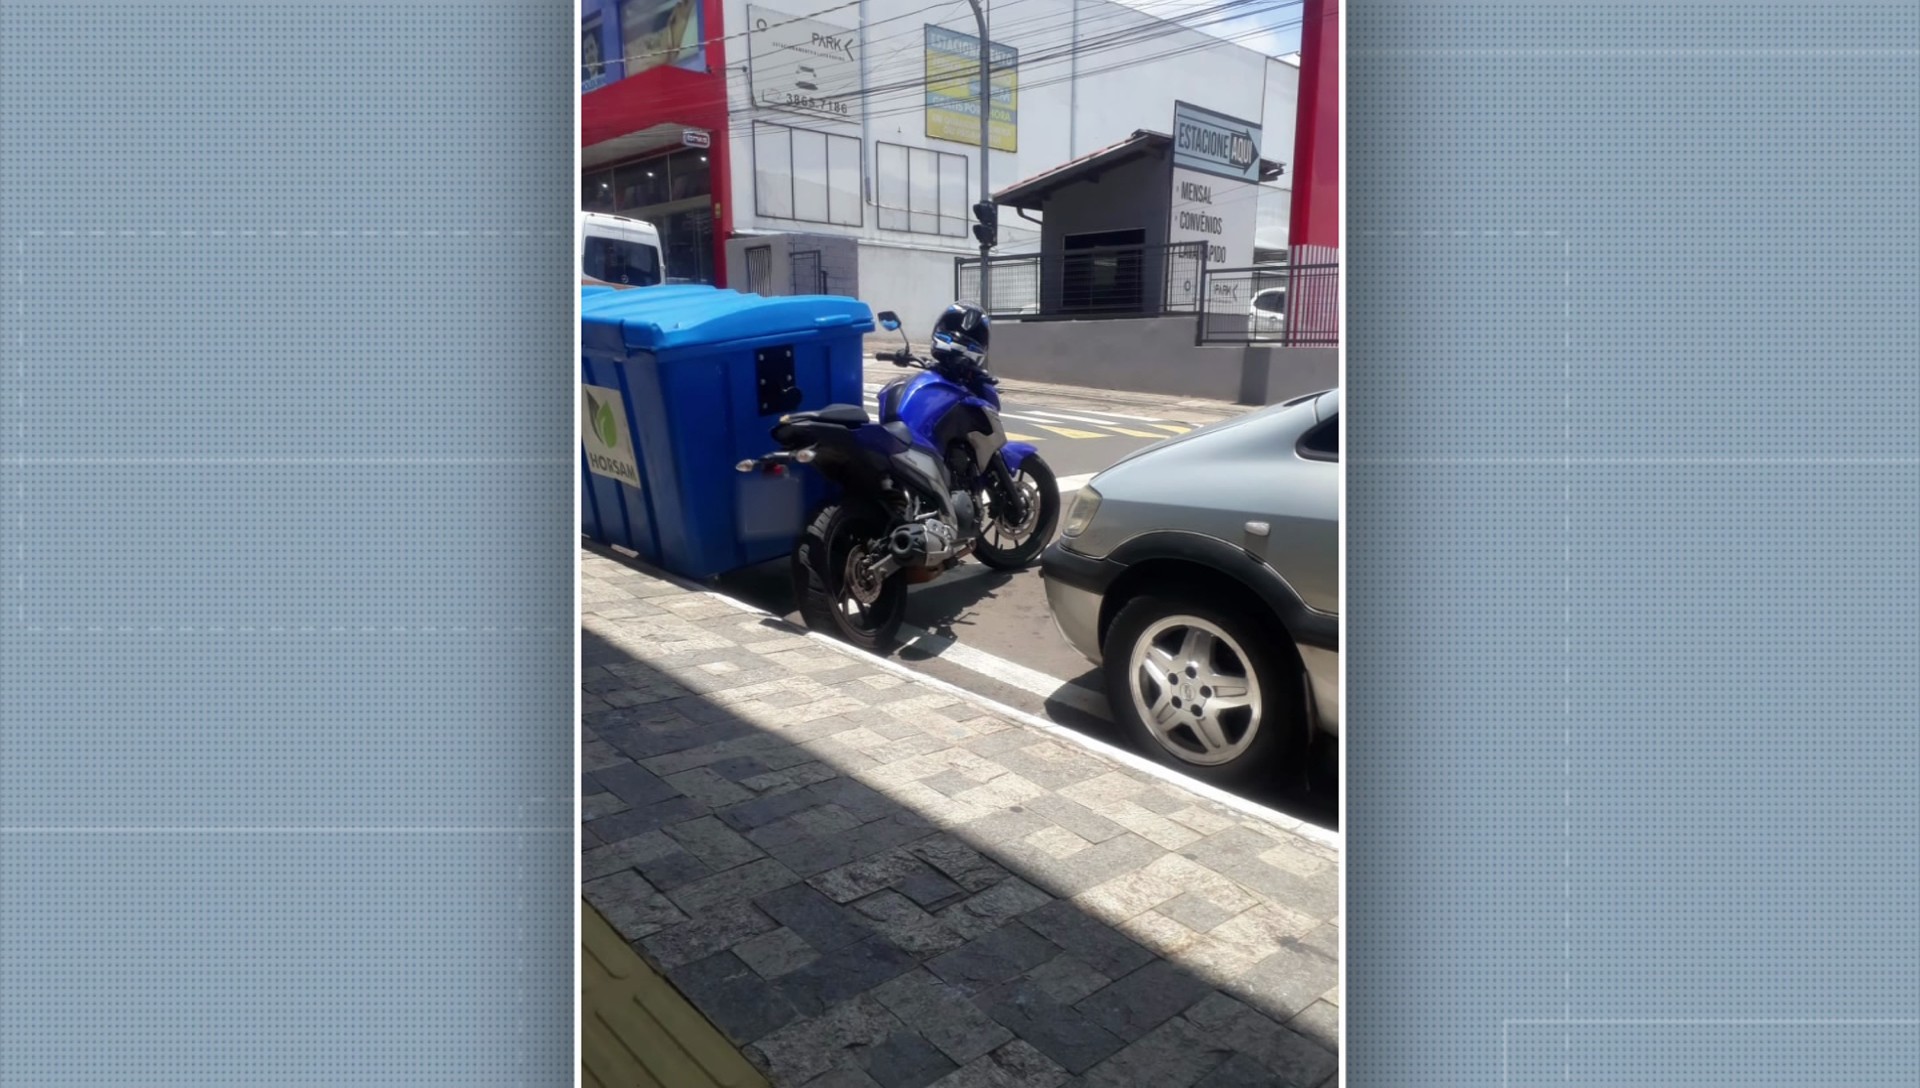 VÍDEO: em 30 segundos, dupla furta moto avaliada em R$ 19 mil em Hortolândia